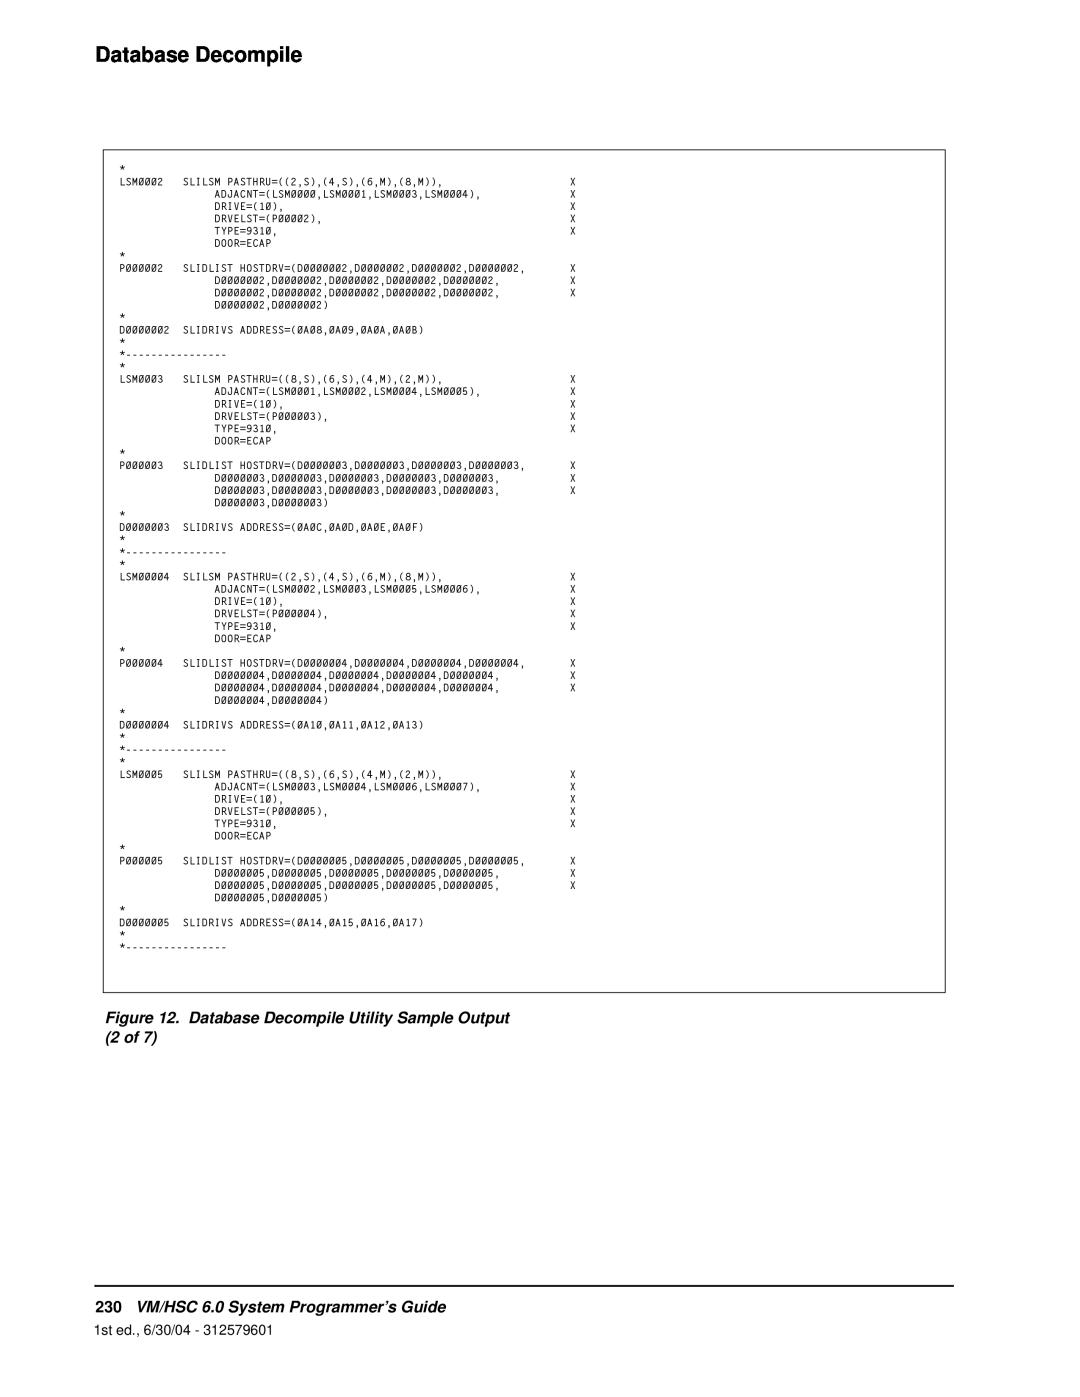 StorageTek manual Database Decompile, 230VM/HSC 6.0 System Programmer’s Guide, 1st ed., 6/30/04 